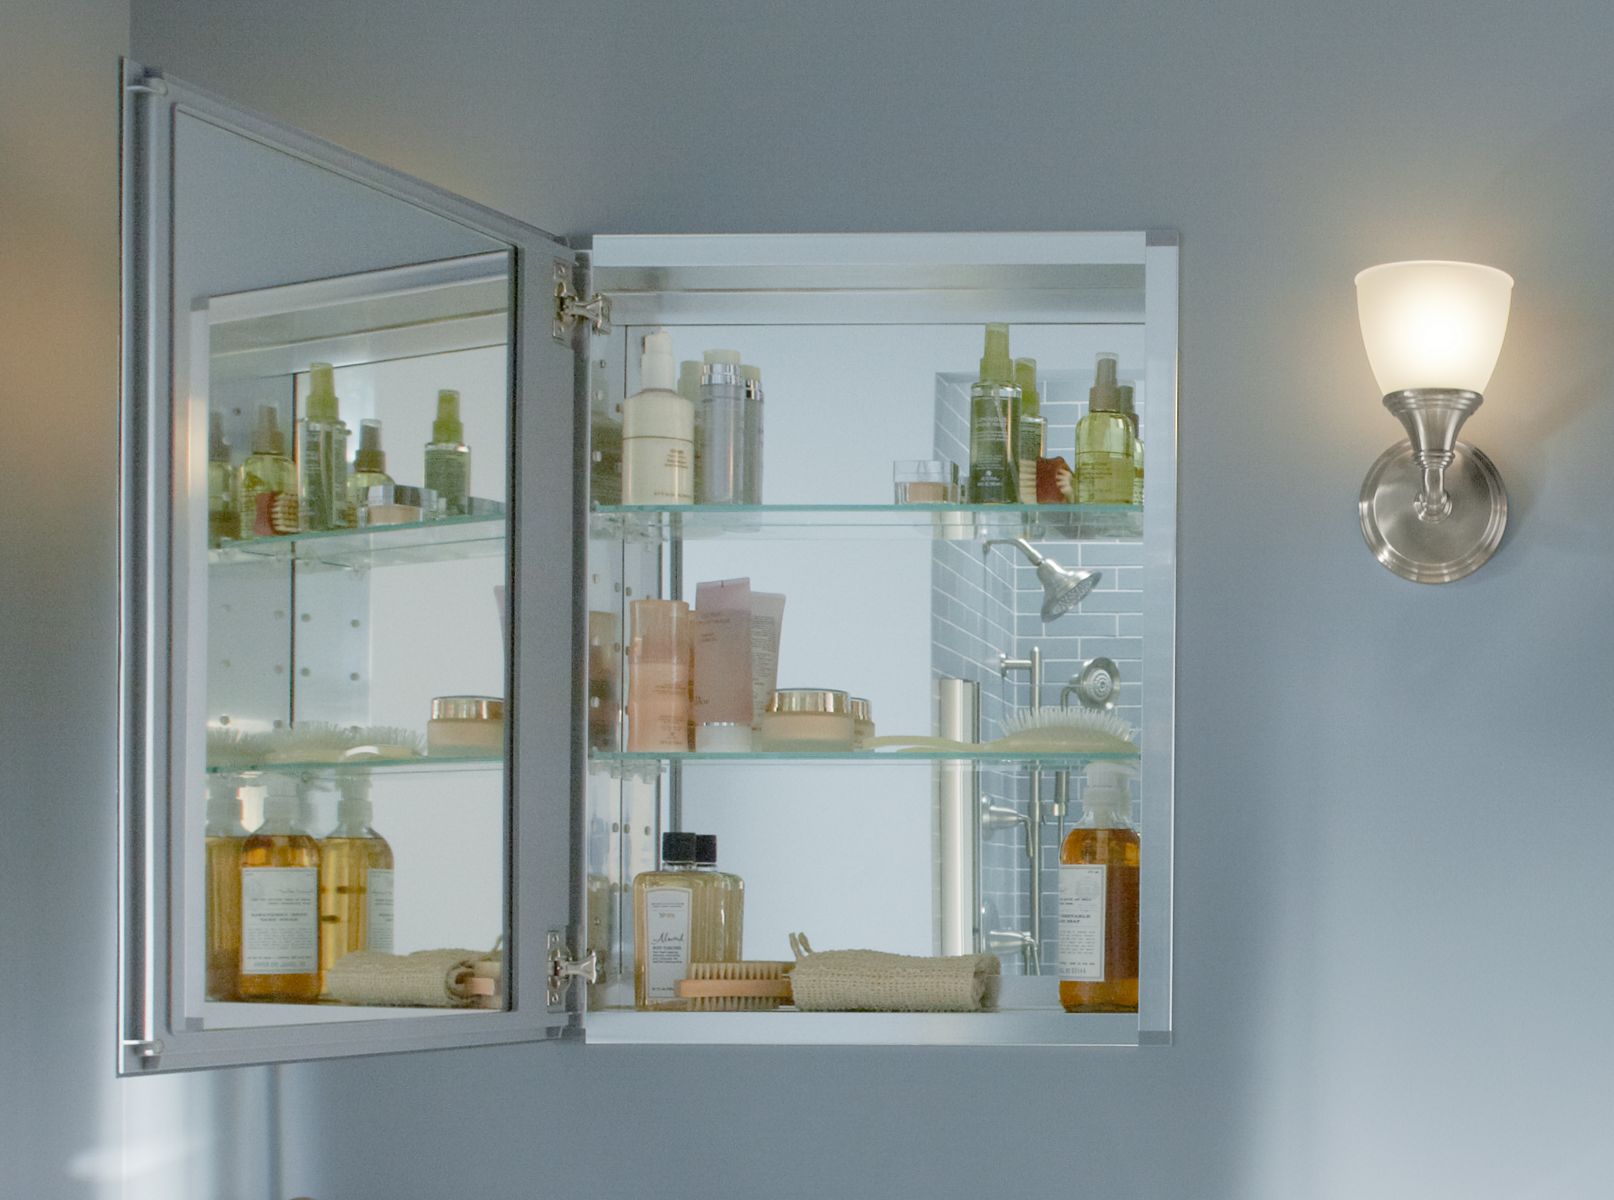 Medicine Cabinets Surface Mount In Wall Framed More Kohler